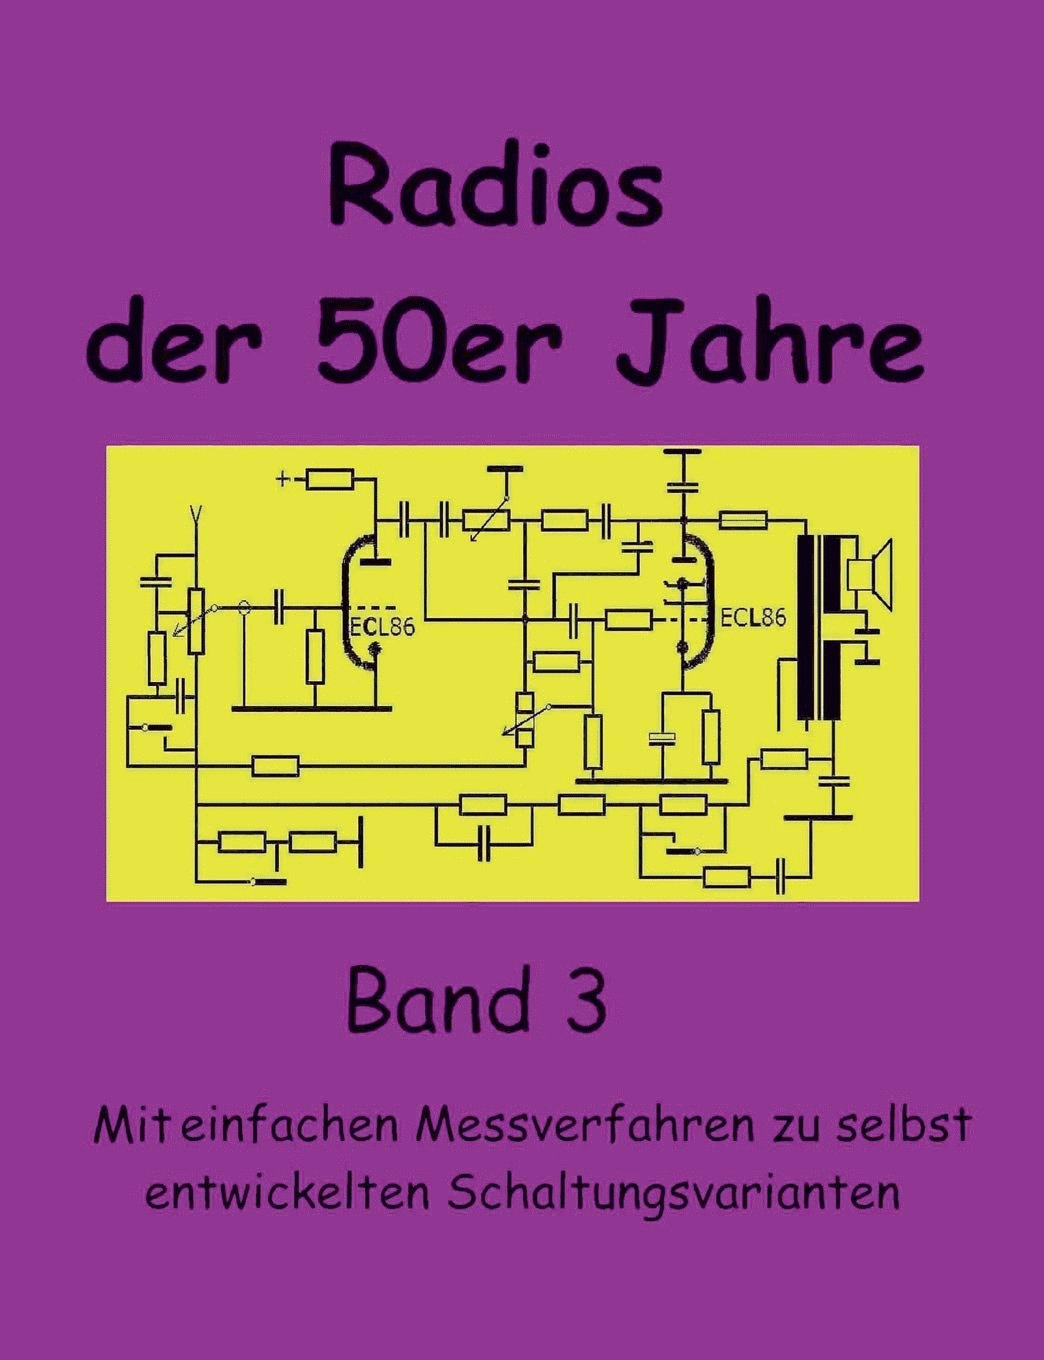 Radios der 50er Jahre Band 3: Mit einfachen Messverfahren zu selbst entwickelten Schaltungsvarianten